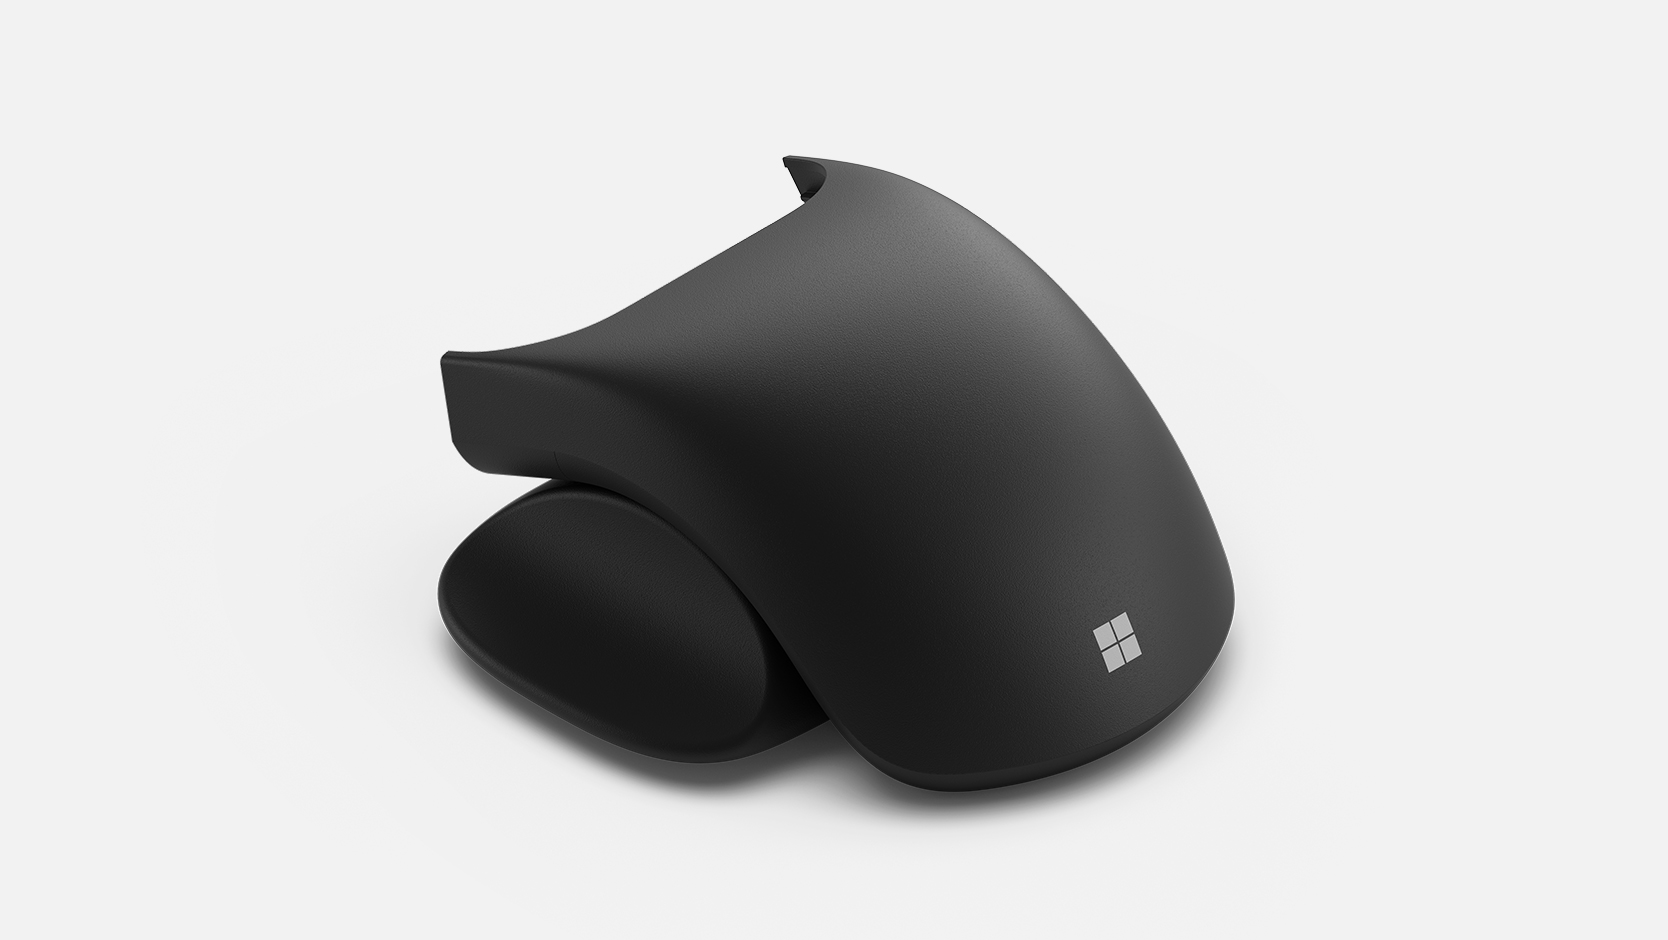 Randare a suportului pentru degetul mare și a capătului mouse-ului adaptiv Microsoft